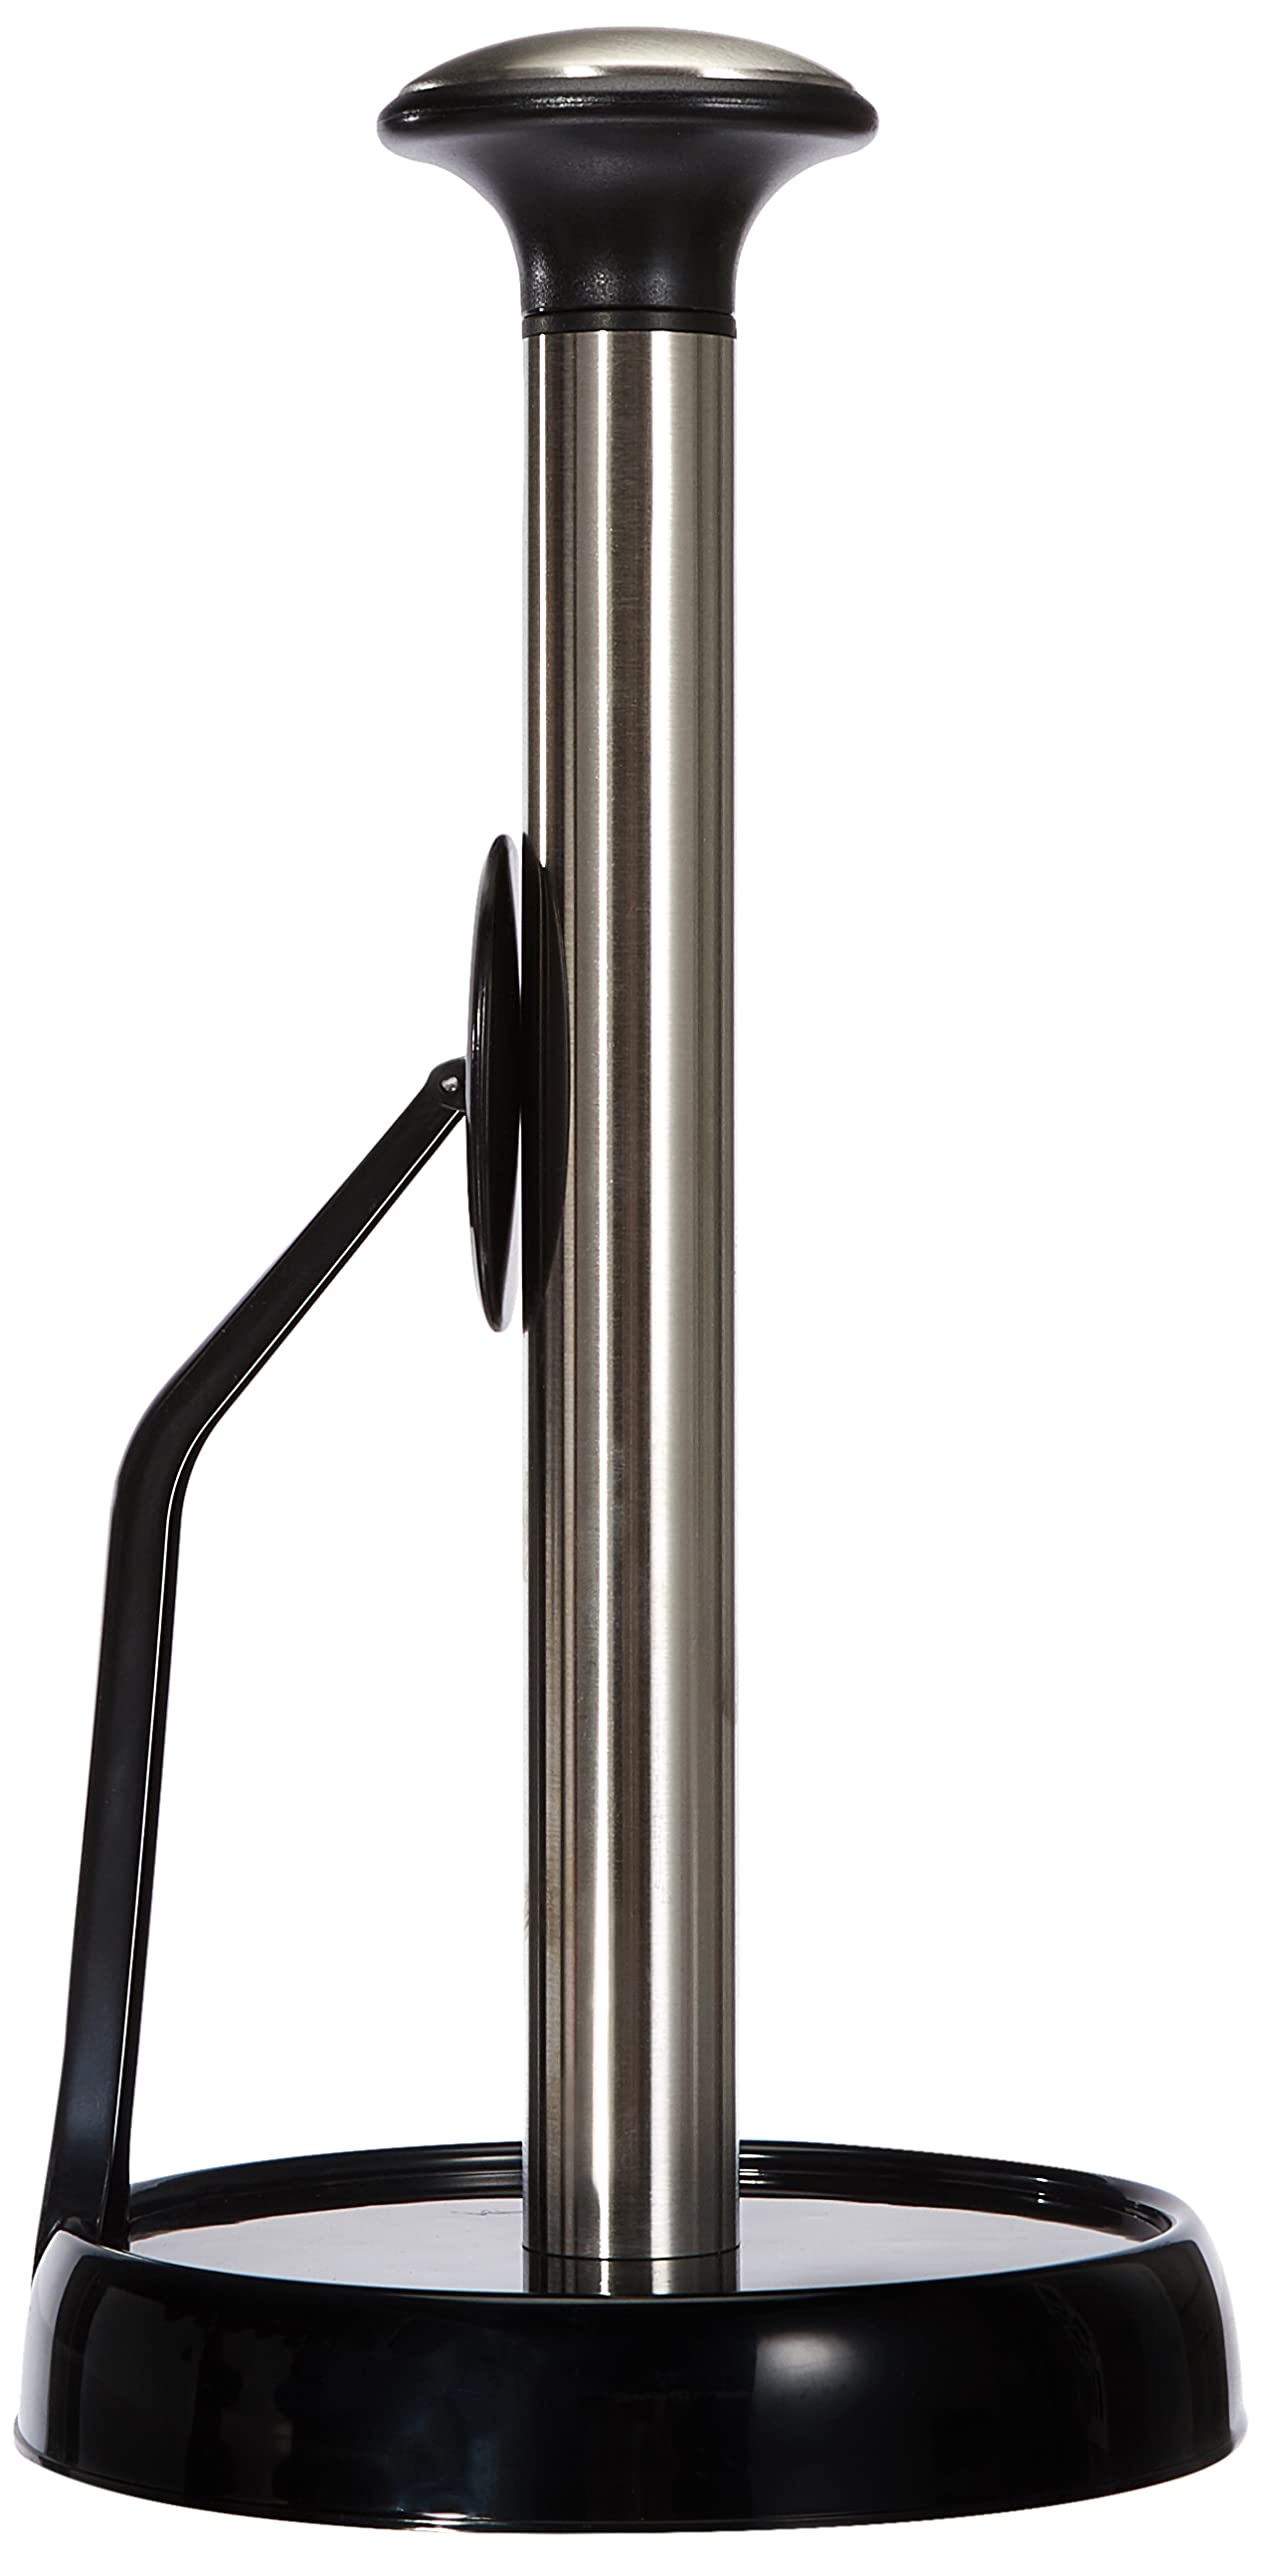 Arcos Zubehör - Suction Papierhandtuchhalter - Gemacht aus Edelstahl und ABS - Farbe Schwarz